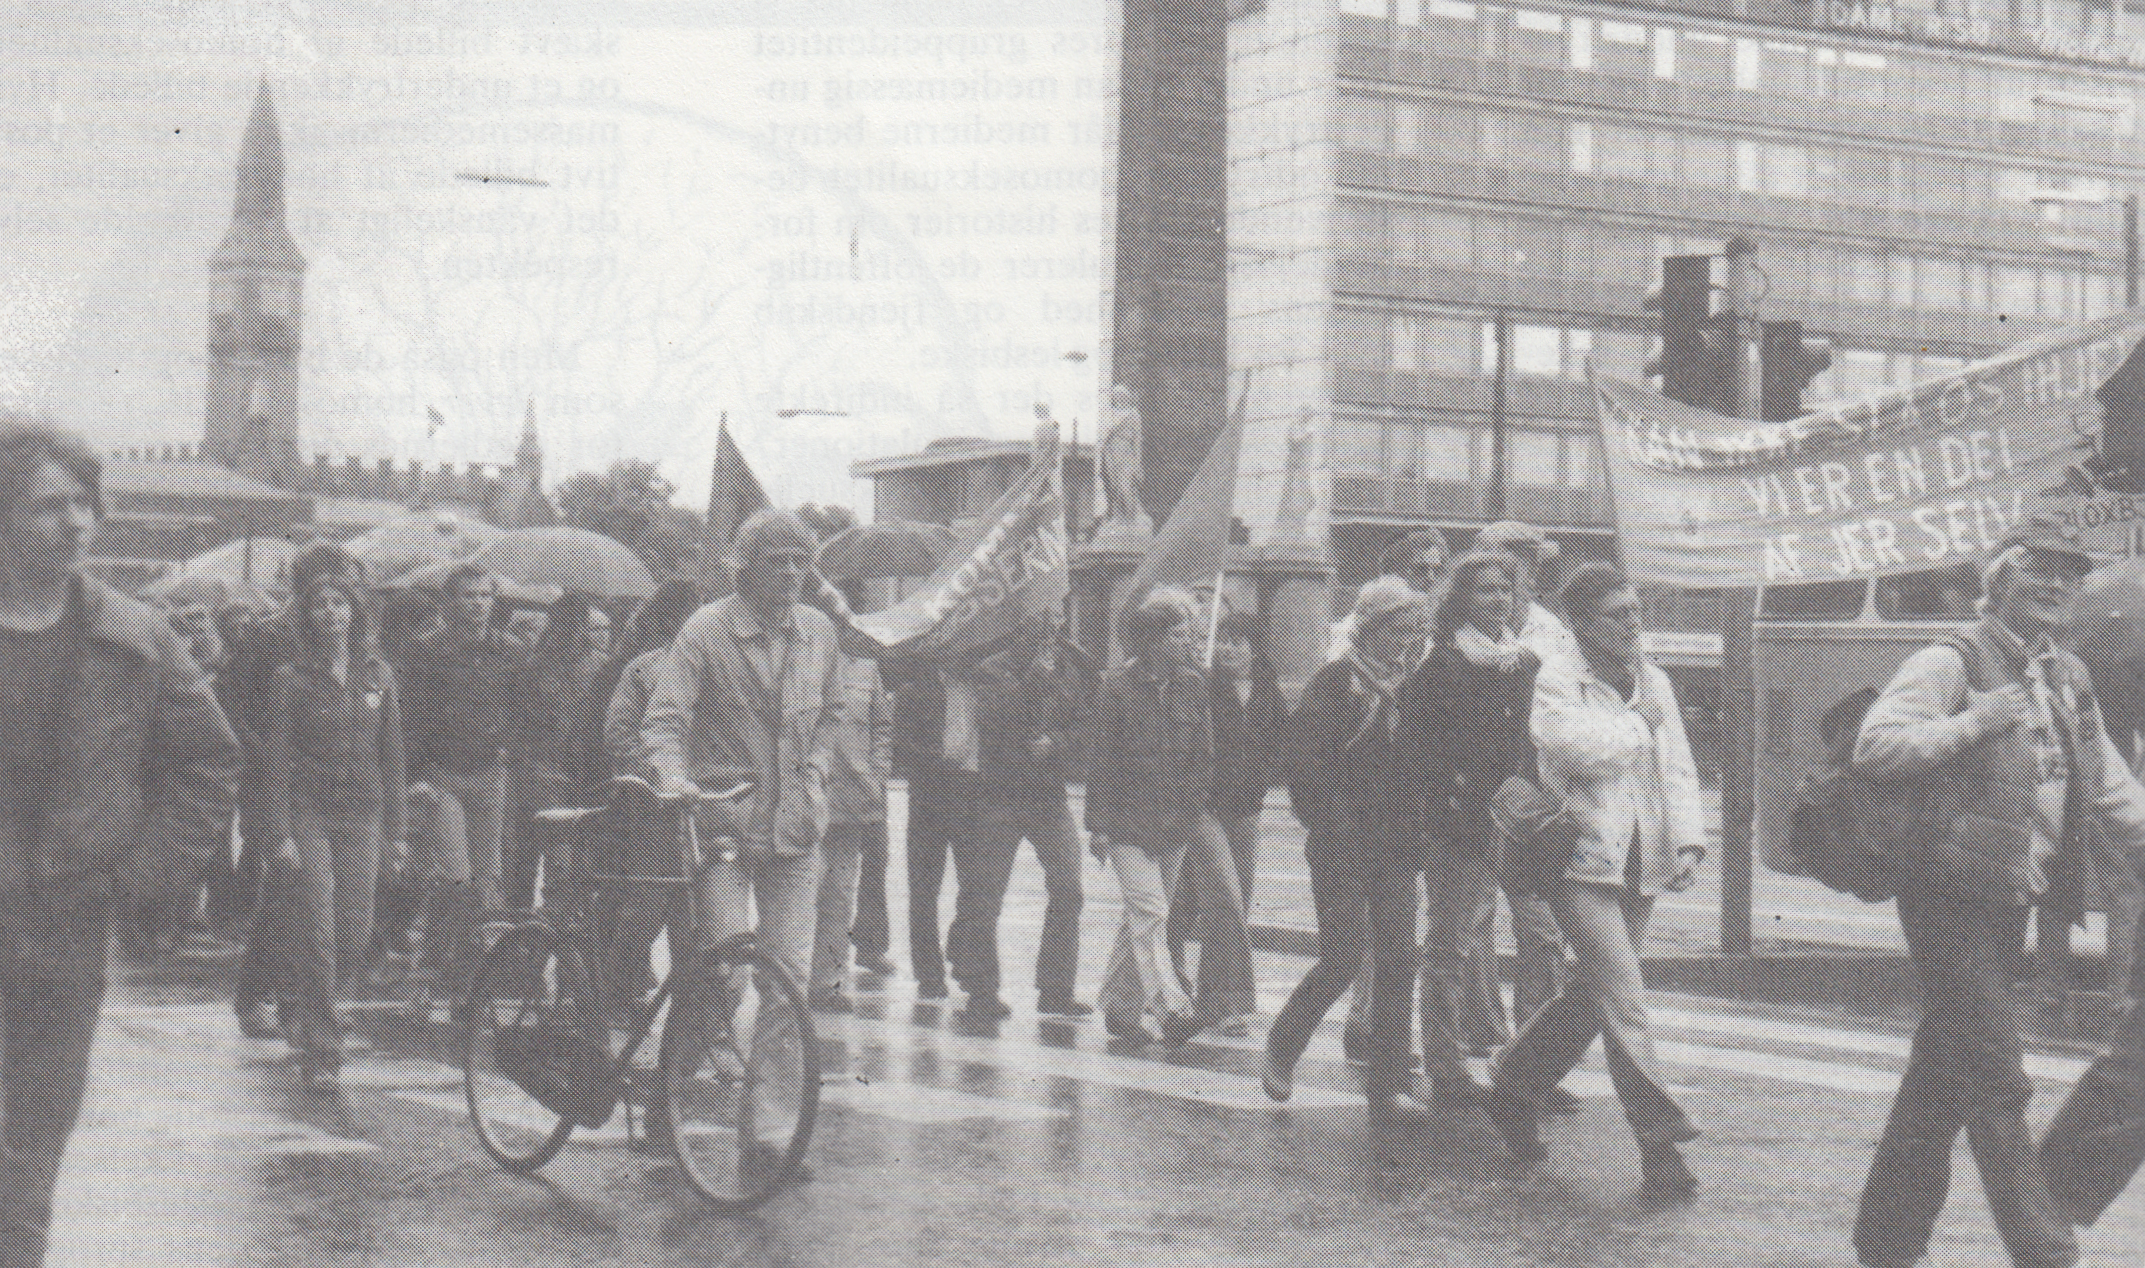 Gammelt billede af en demonstration i København. LGBT+ personer demonstrerer med bannere og i baggrunden ses Københavns Rådhus